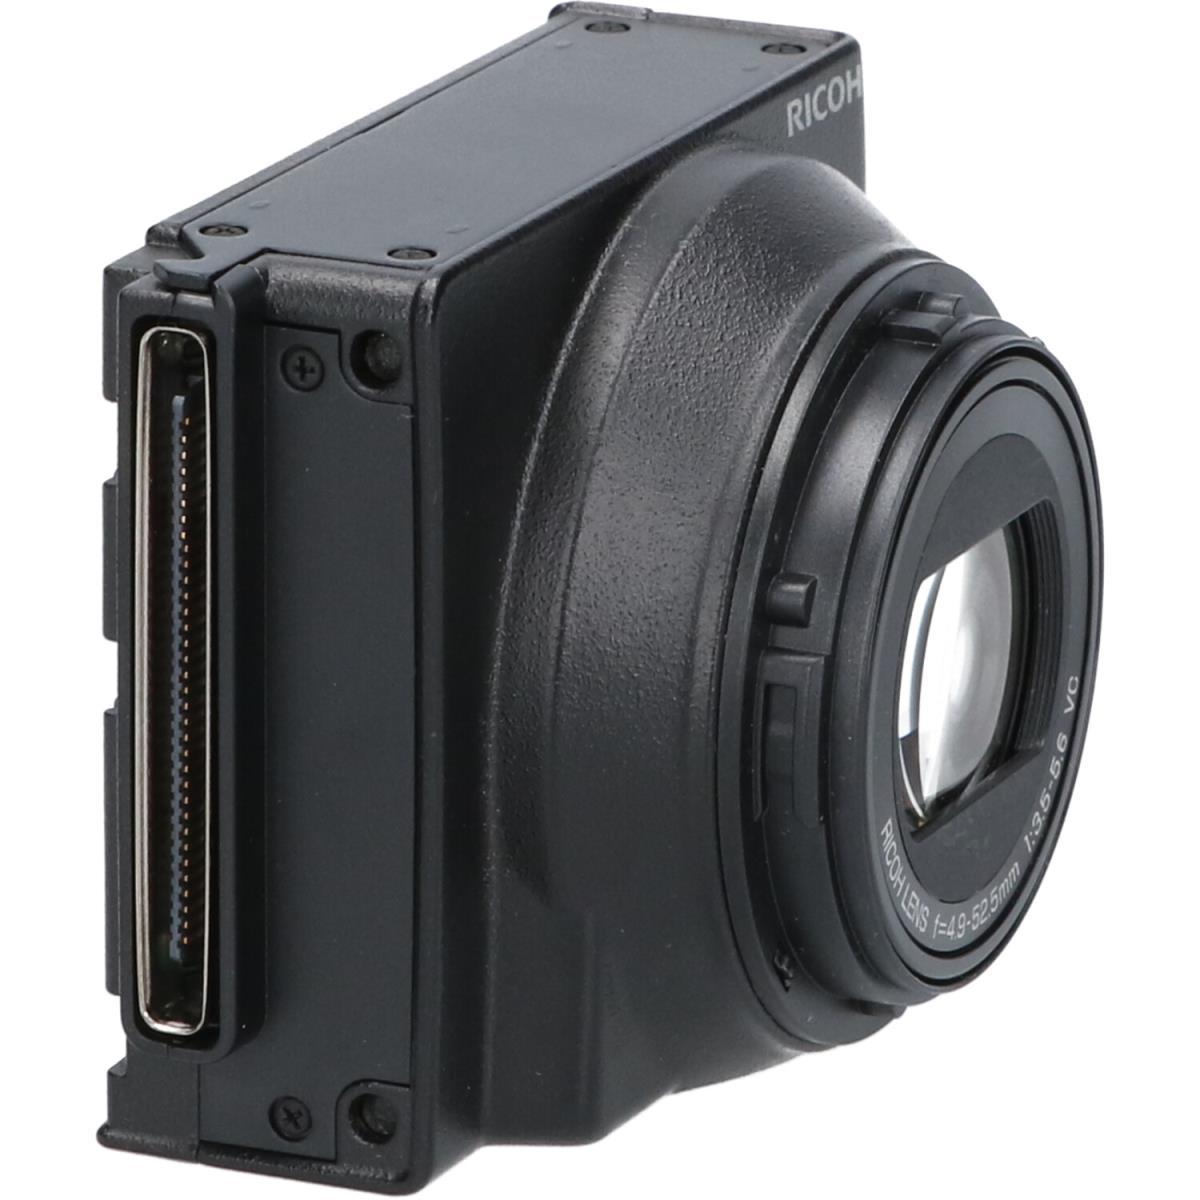 RICOH GXR用カメラユニット RICOH LENS P10 28-300mm F3.5-5.6 VC